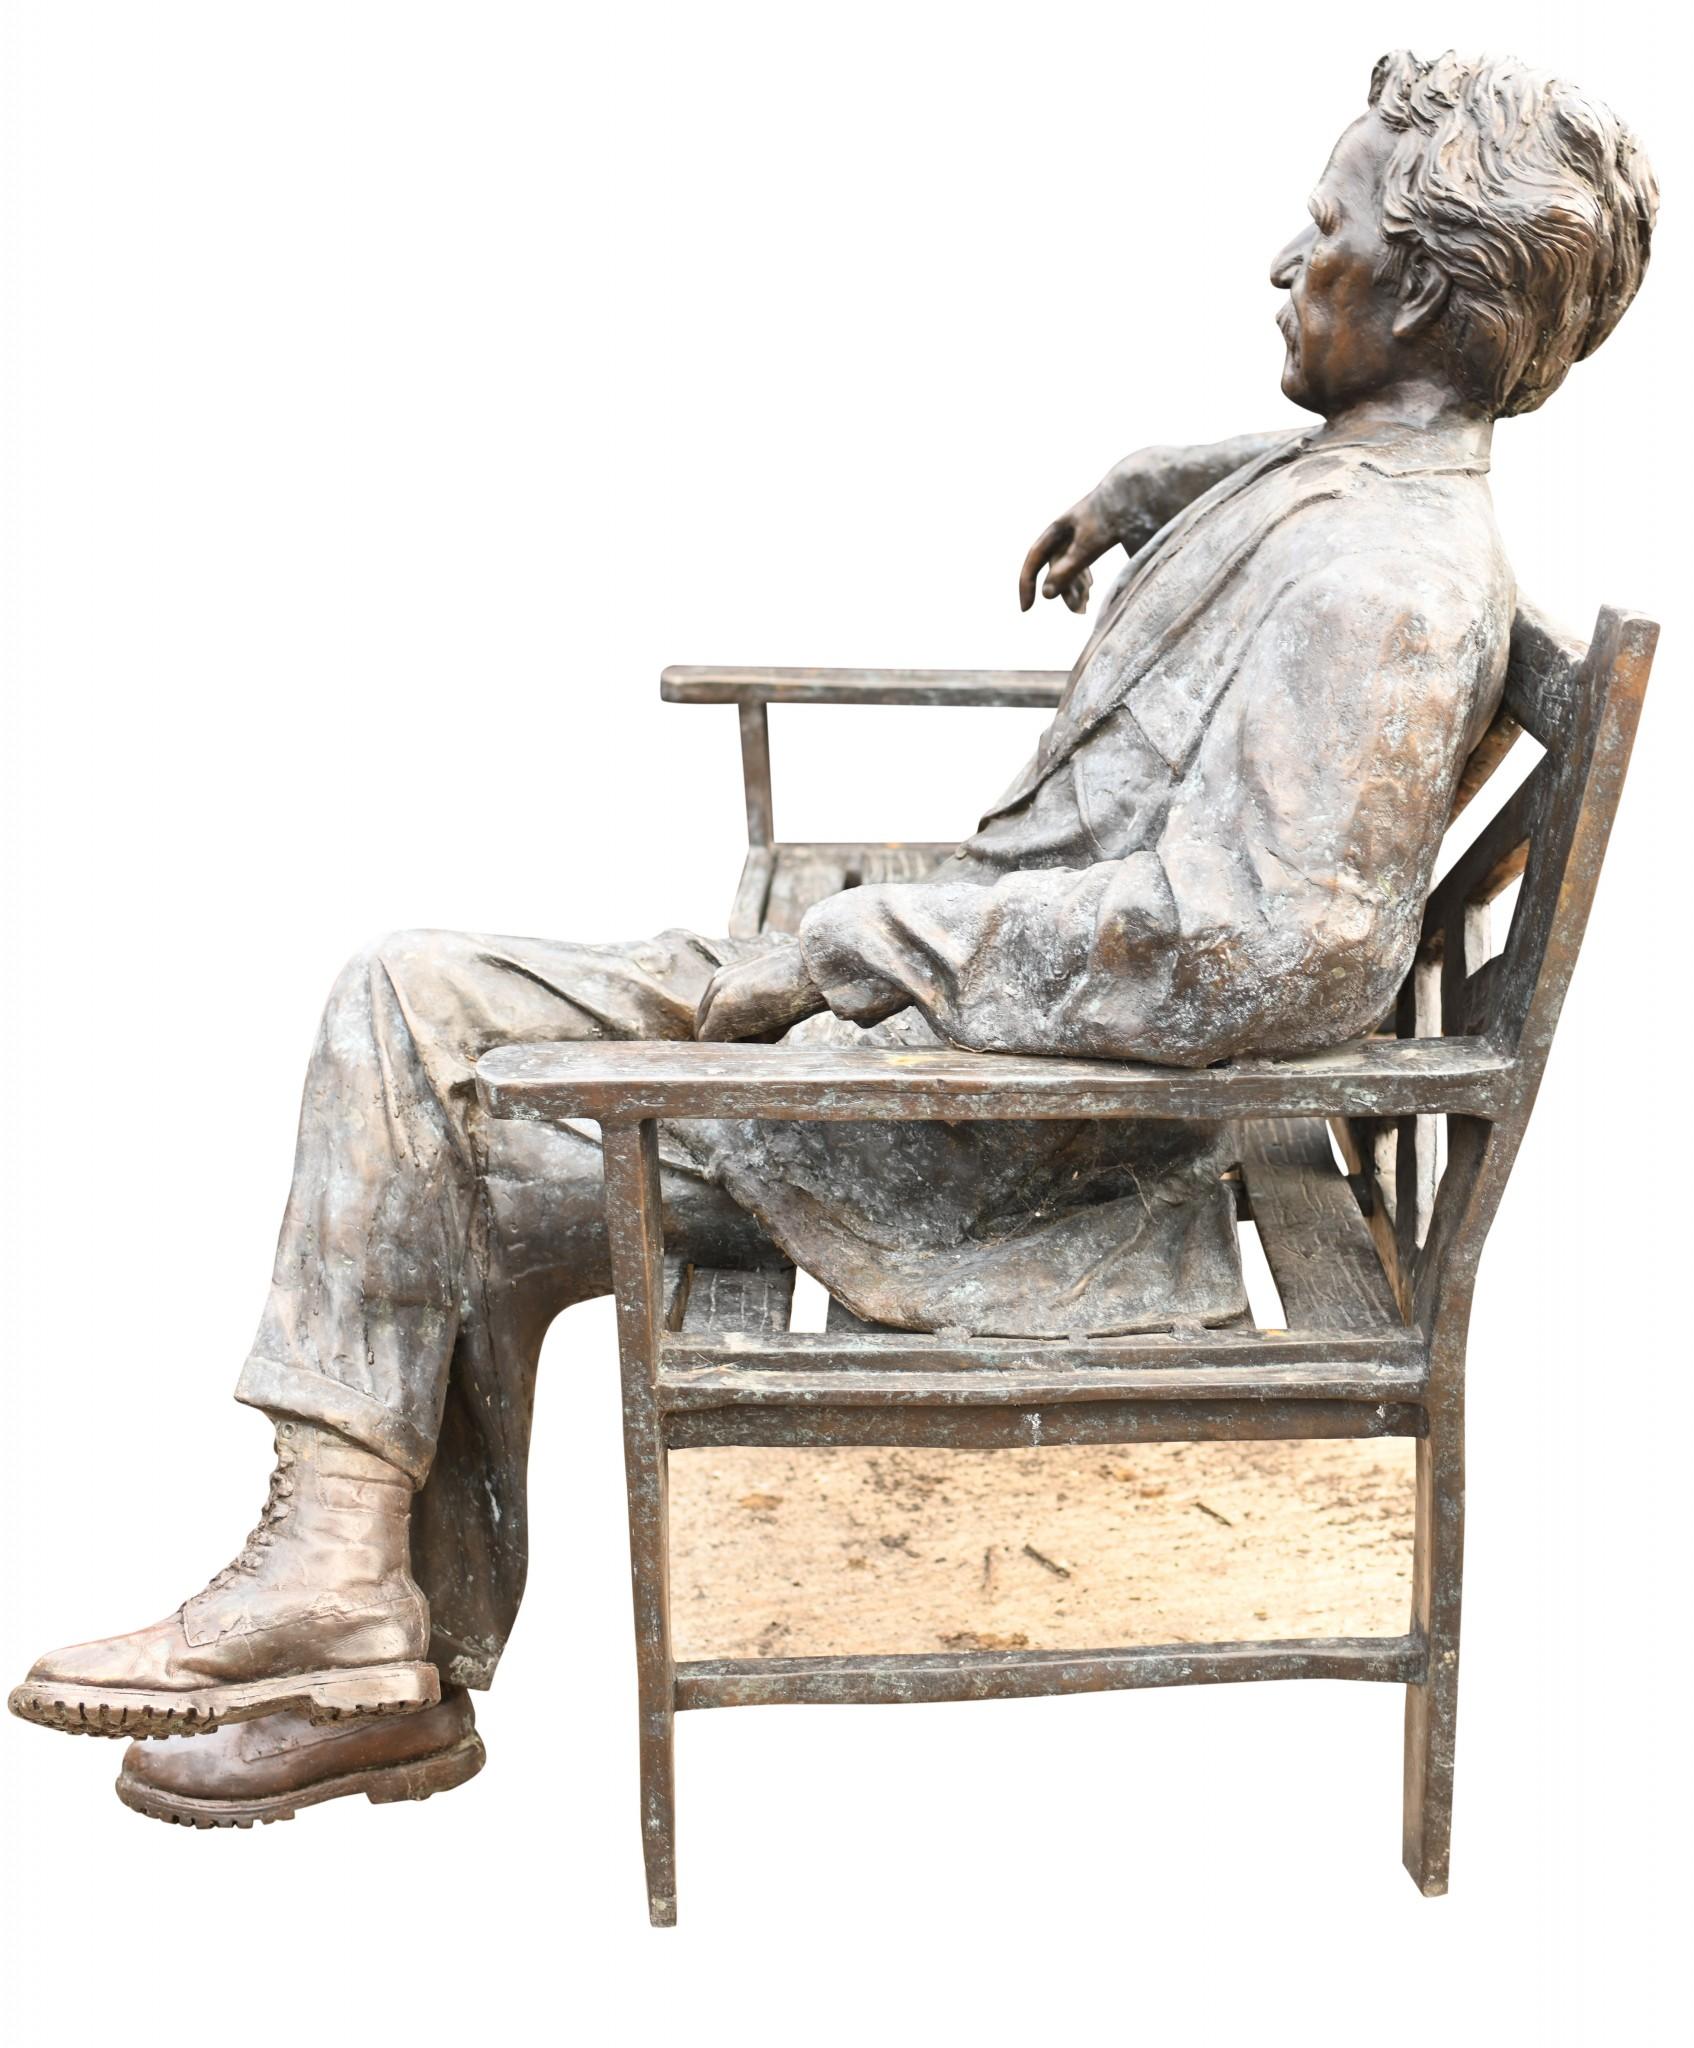 Large Bronze Garden Bench with Lifesize Albert Einstein Statue 6